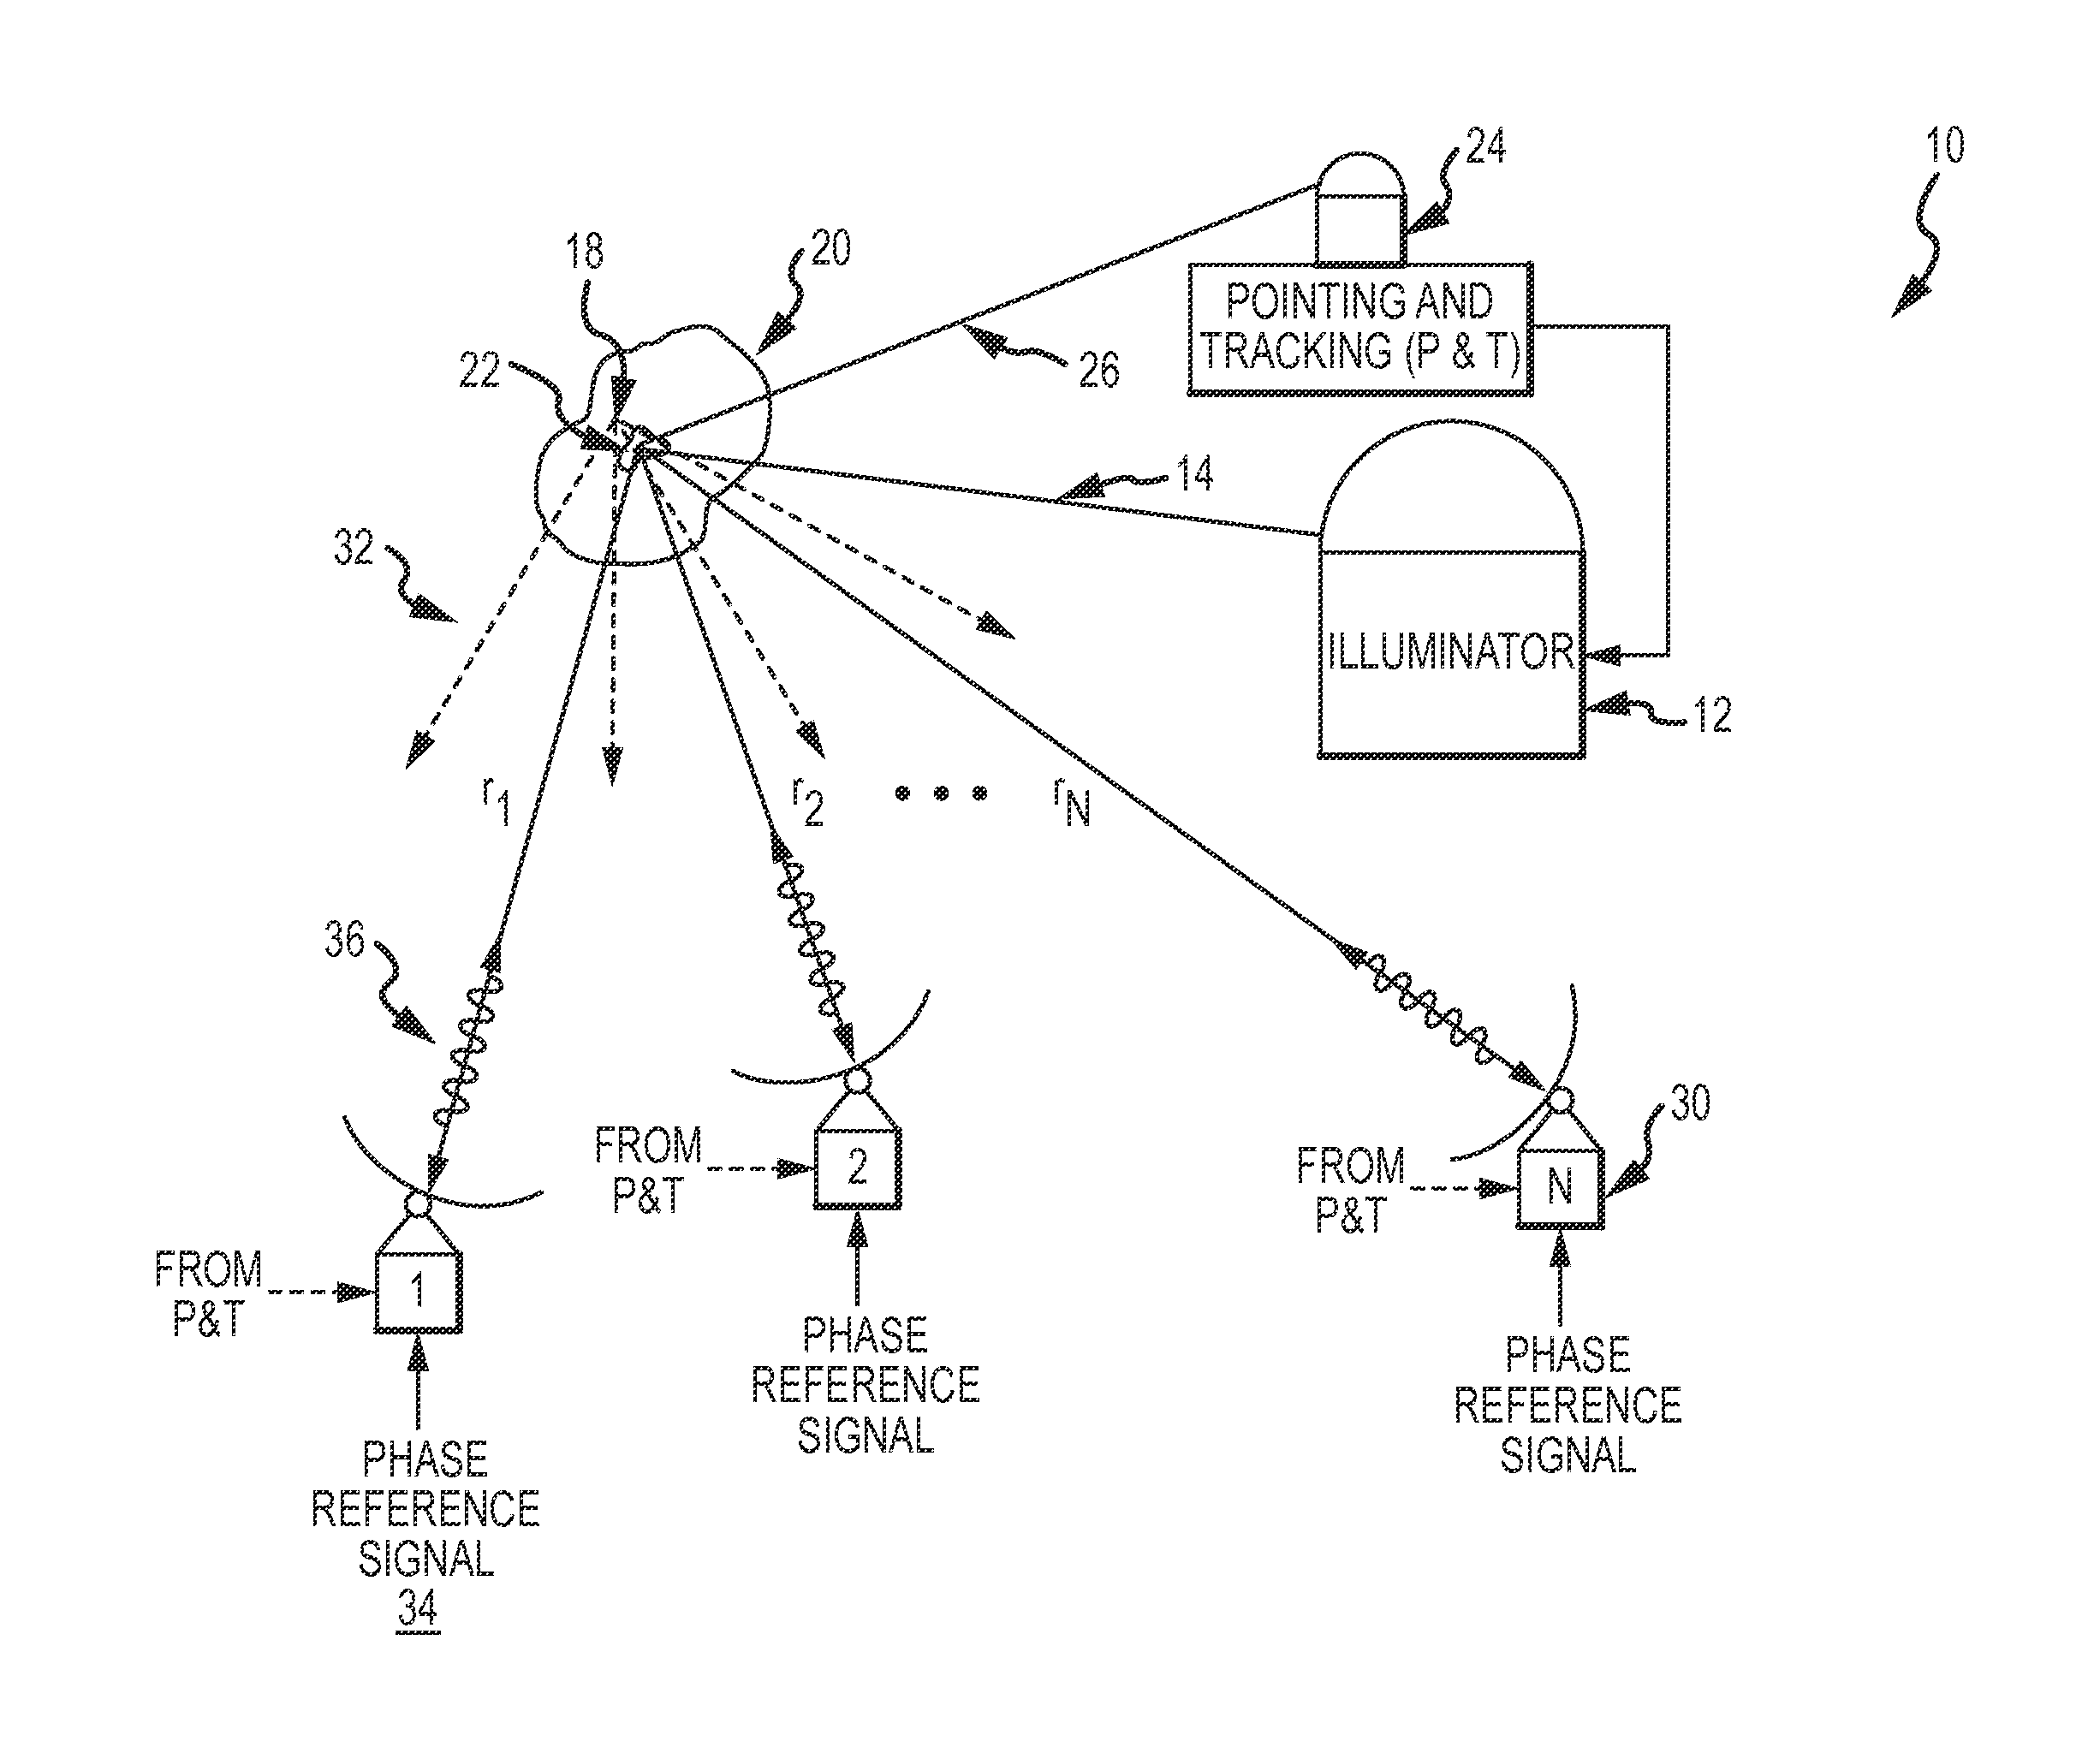 Active retrodirective antenna array with a virtual beacon